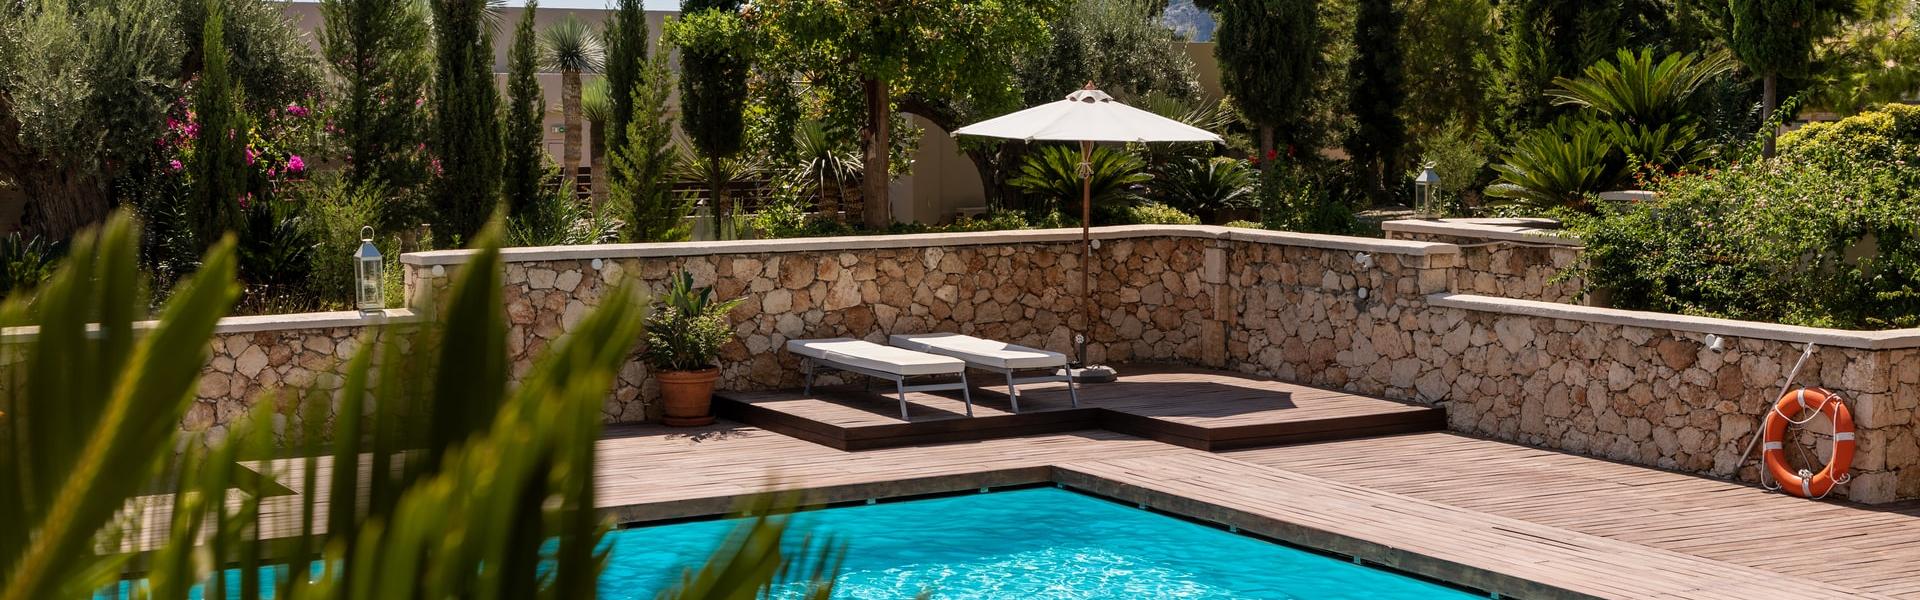 Ferienhaus mit Pool auf Sardinien - Wimdu